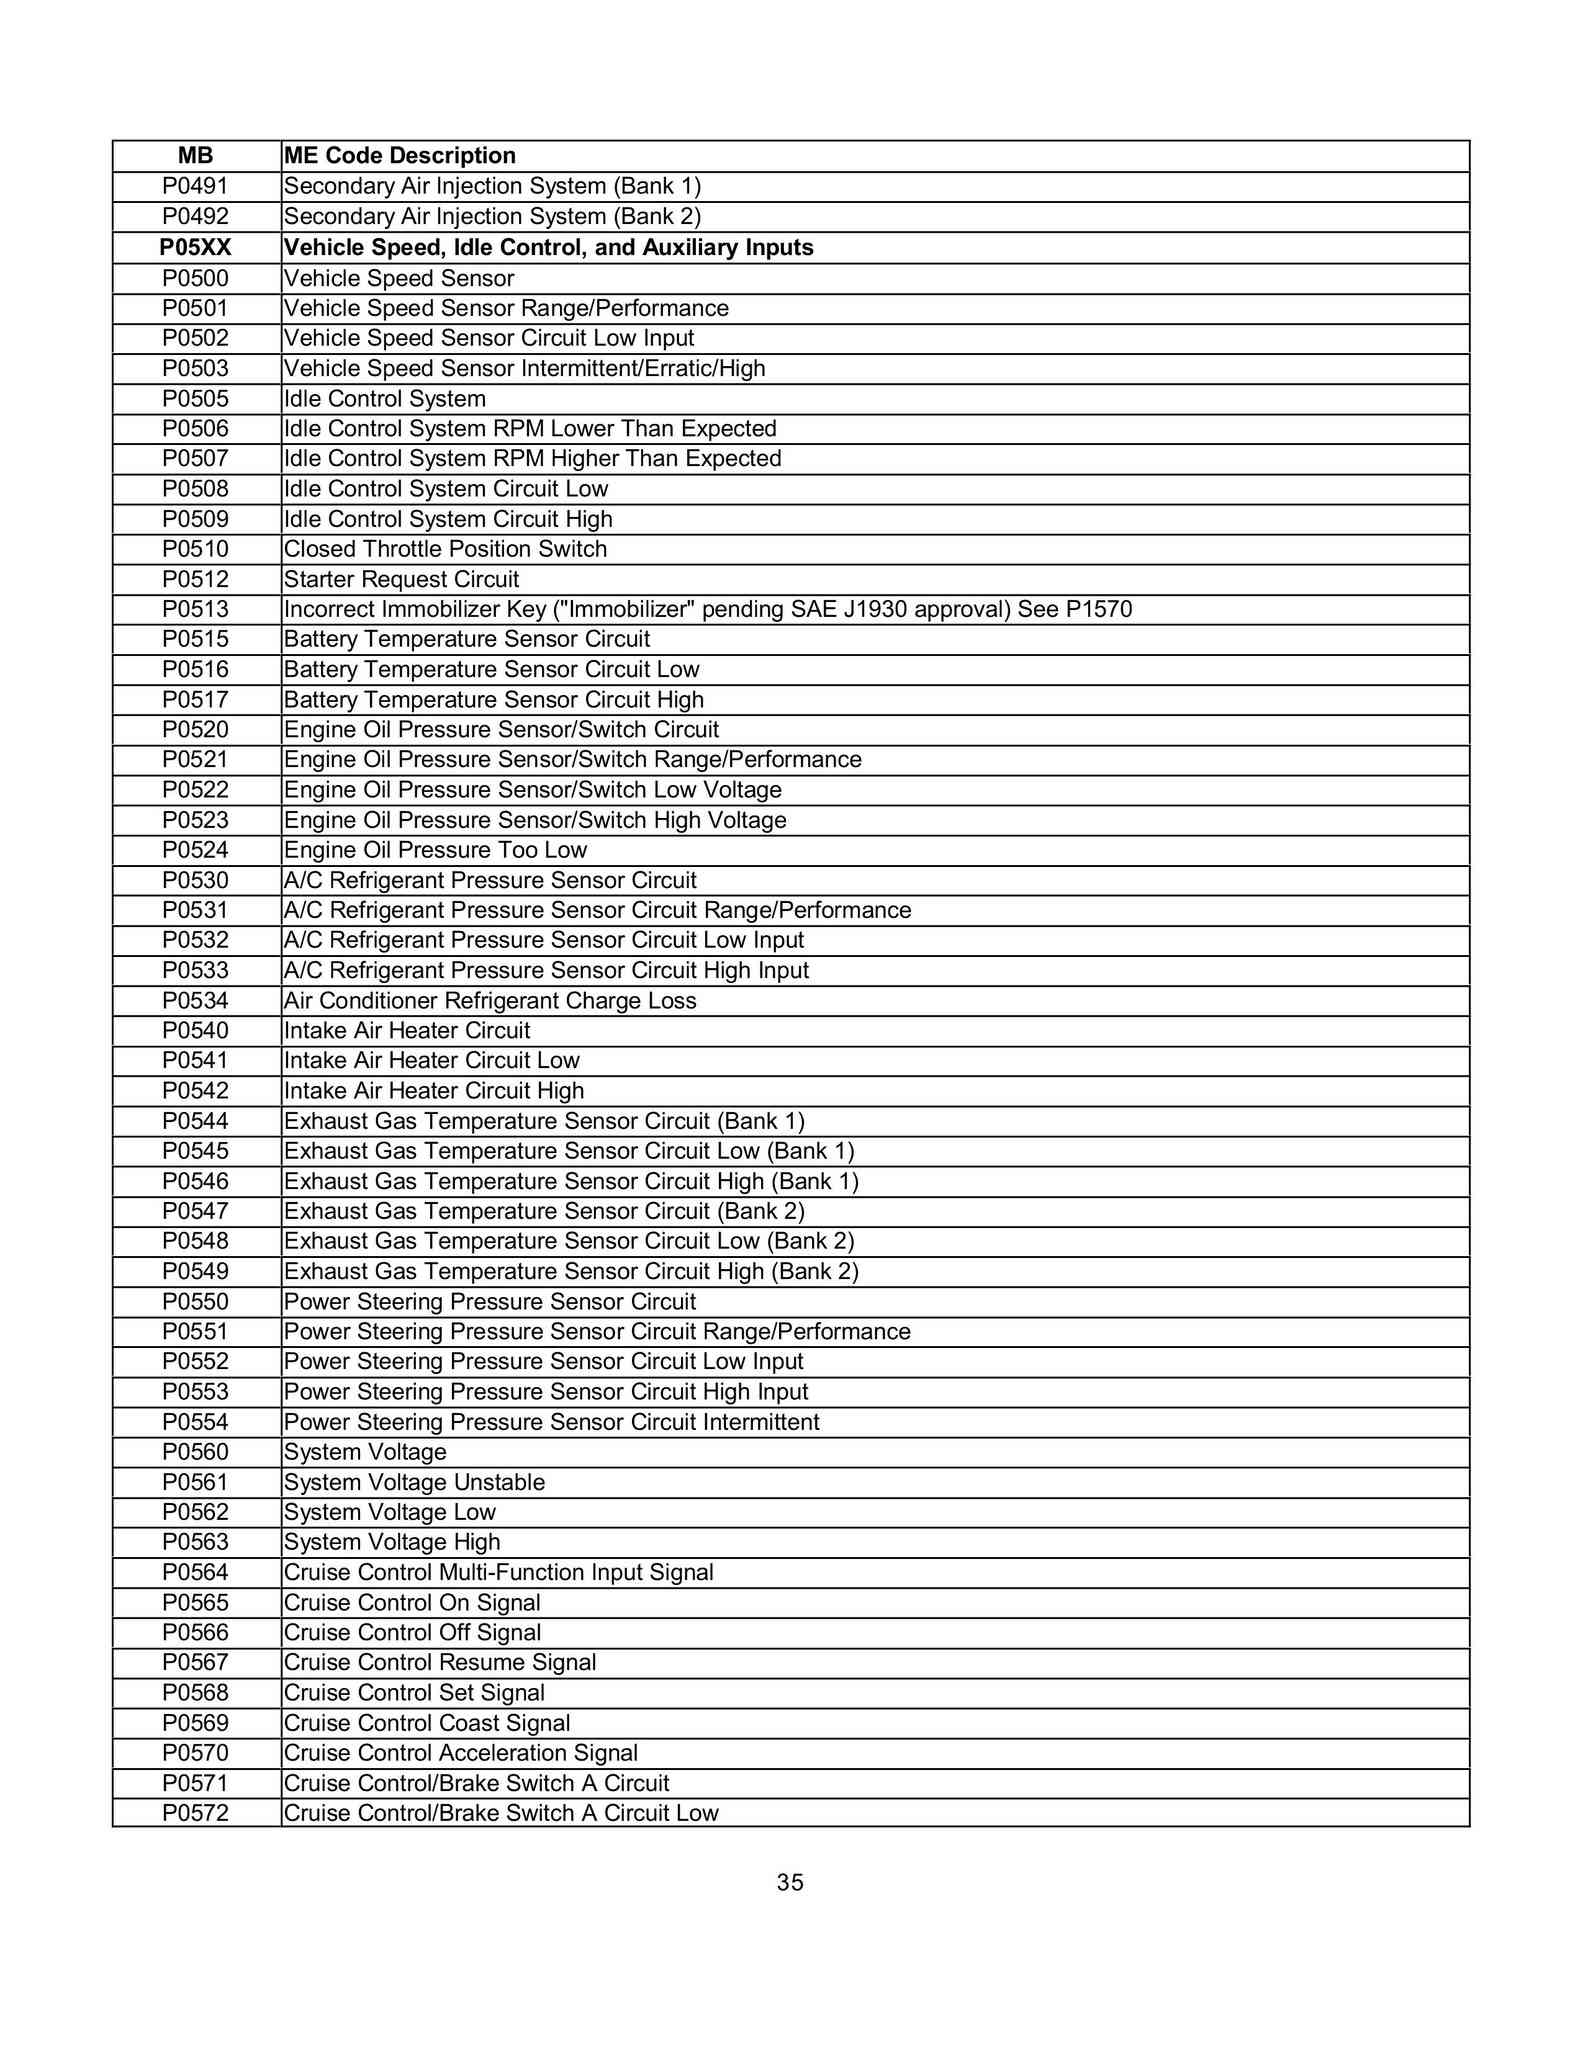 Lista de Códigos de falhas (fault codes) Mercedes-Benz 003512